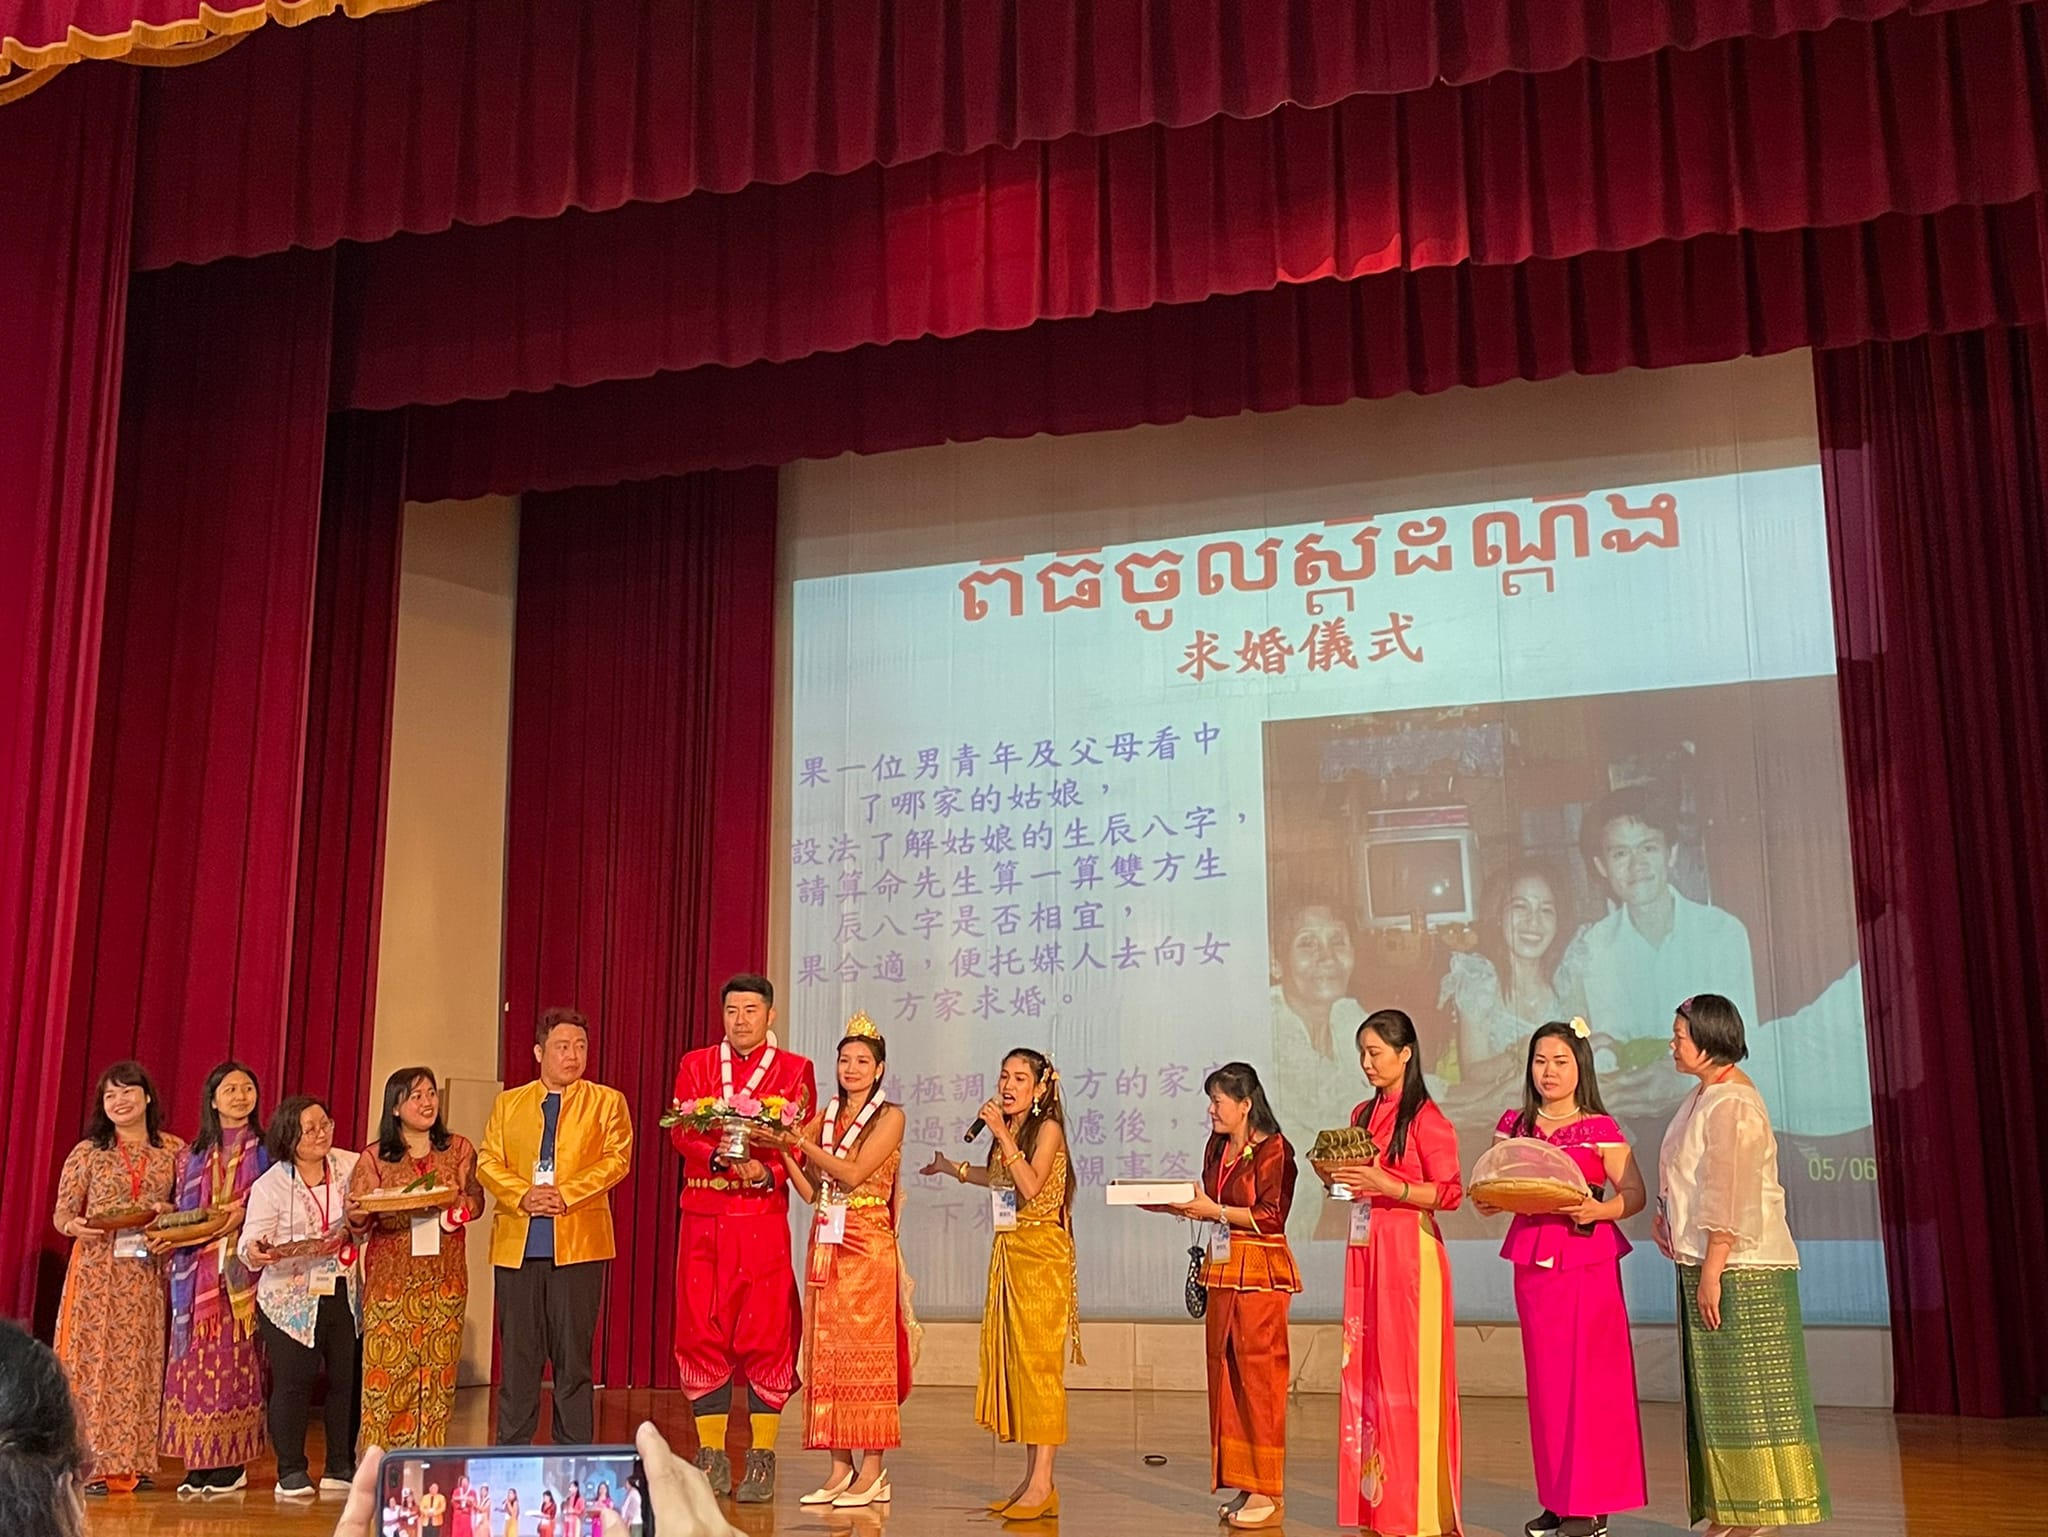 biểu diễn giới thiệu văn hoá Campuchia